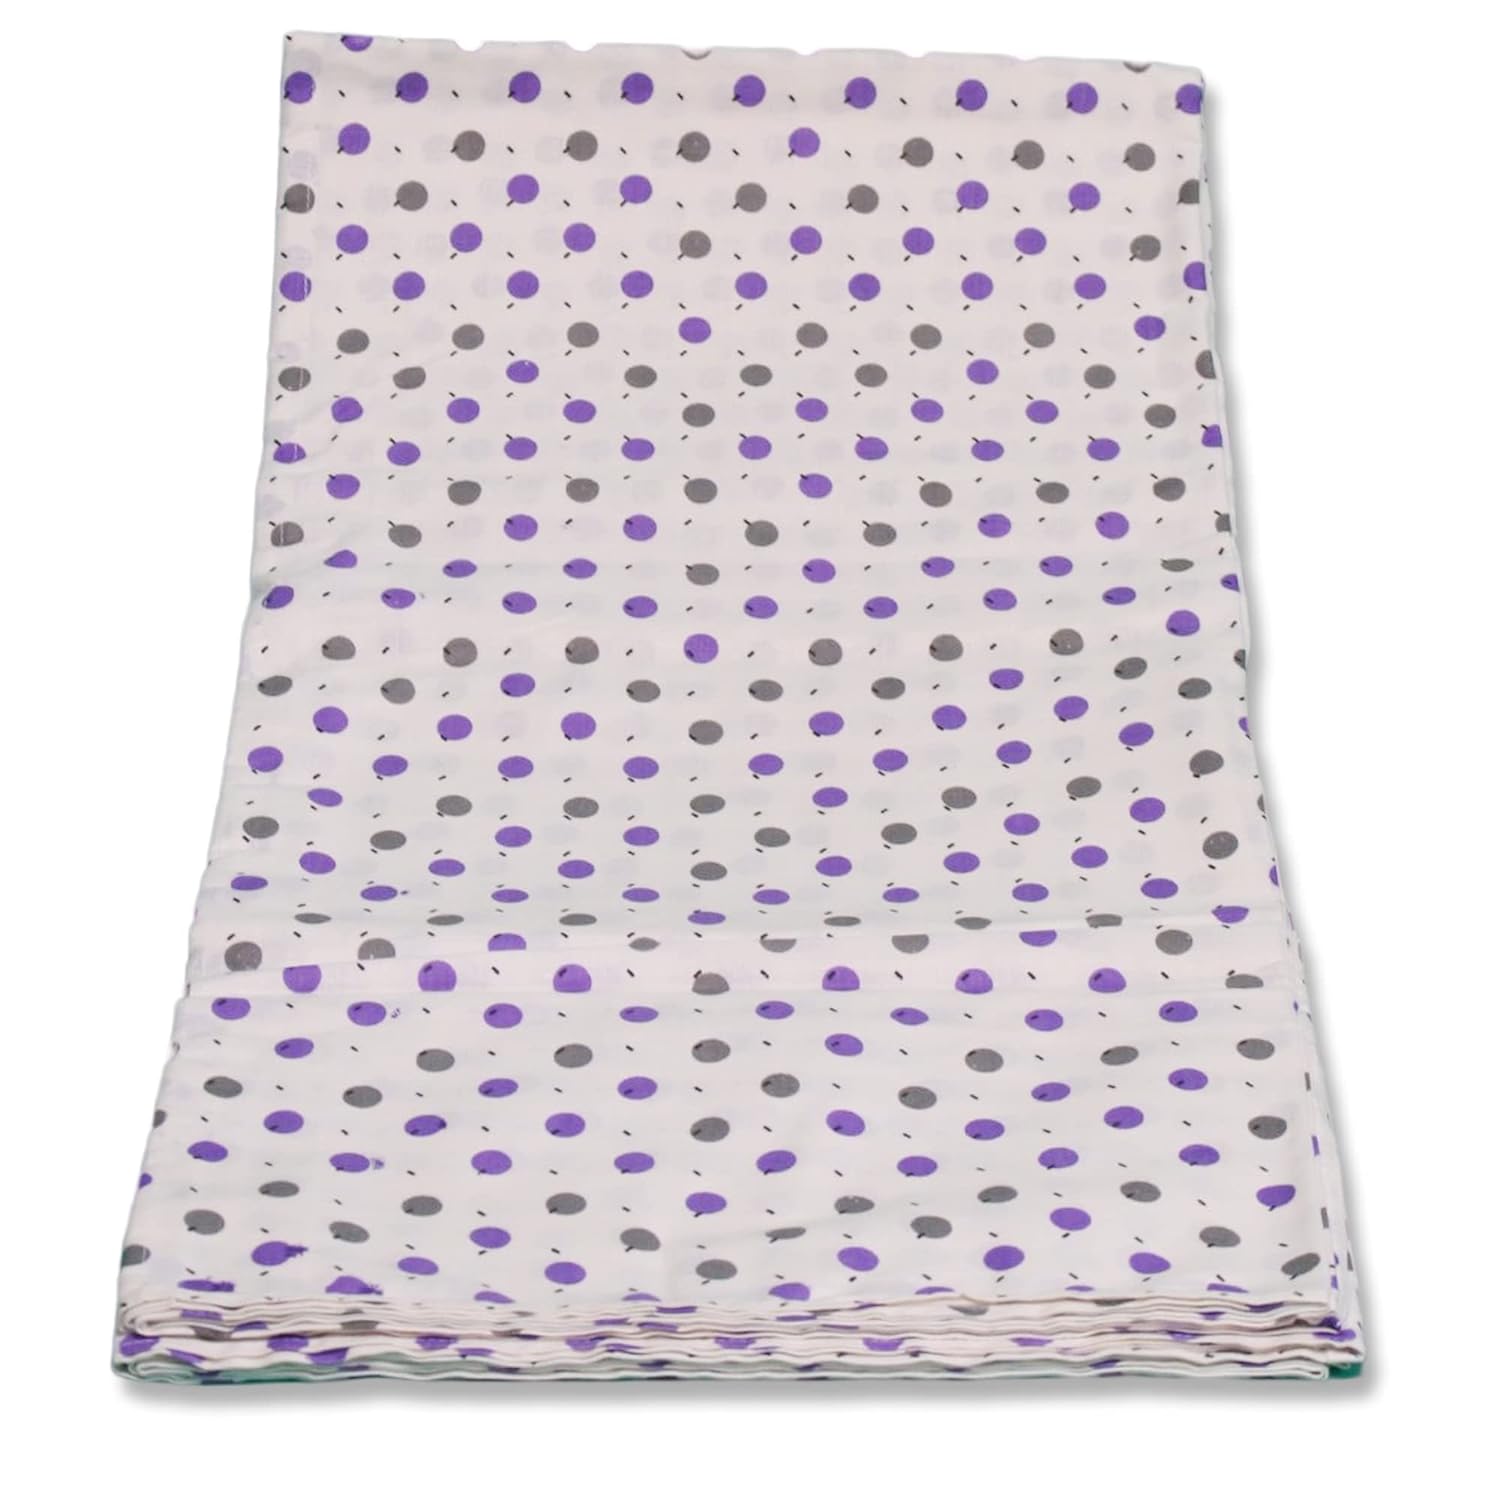 Cradle Cloth Dots Set Cloth With Net (Medium)